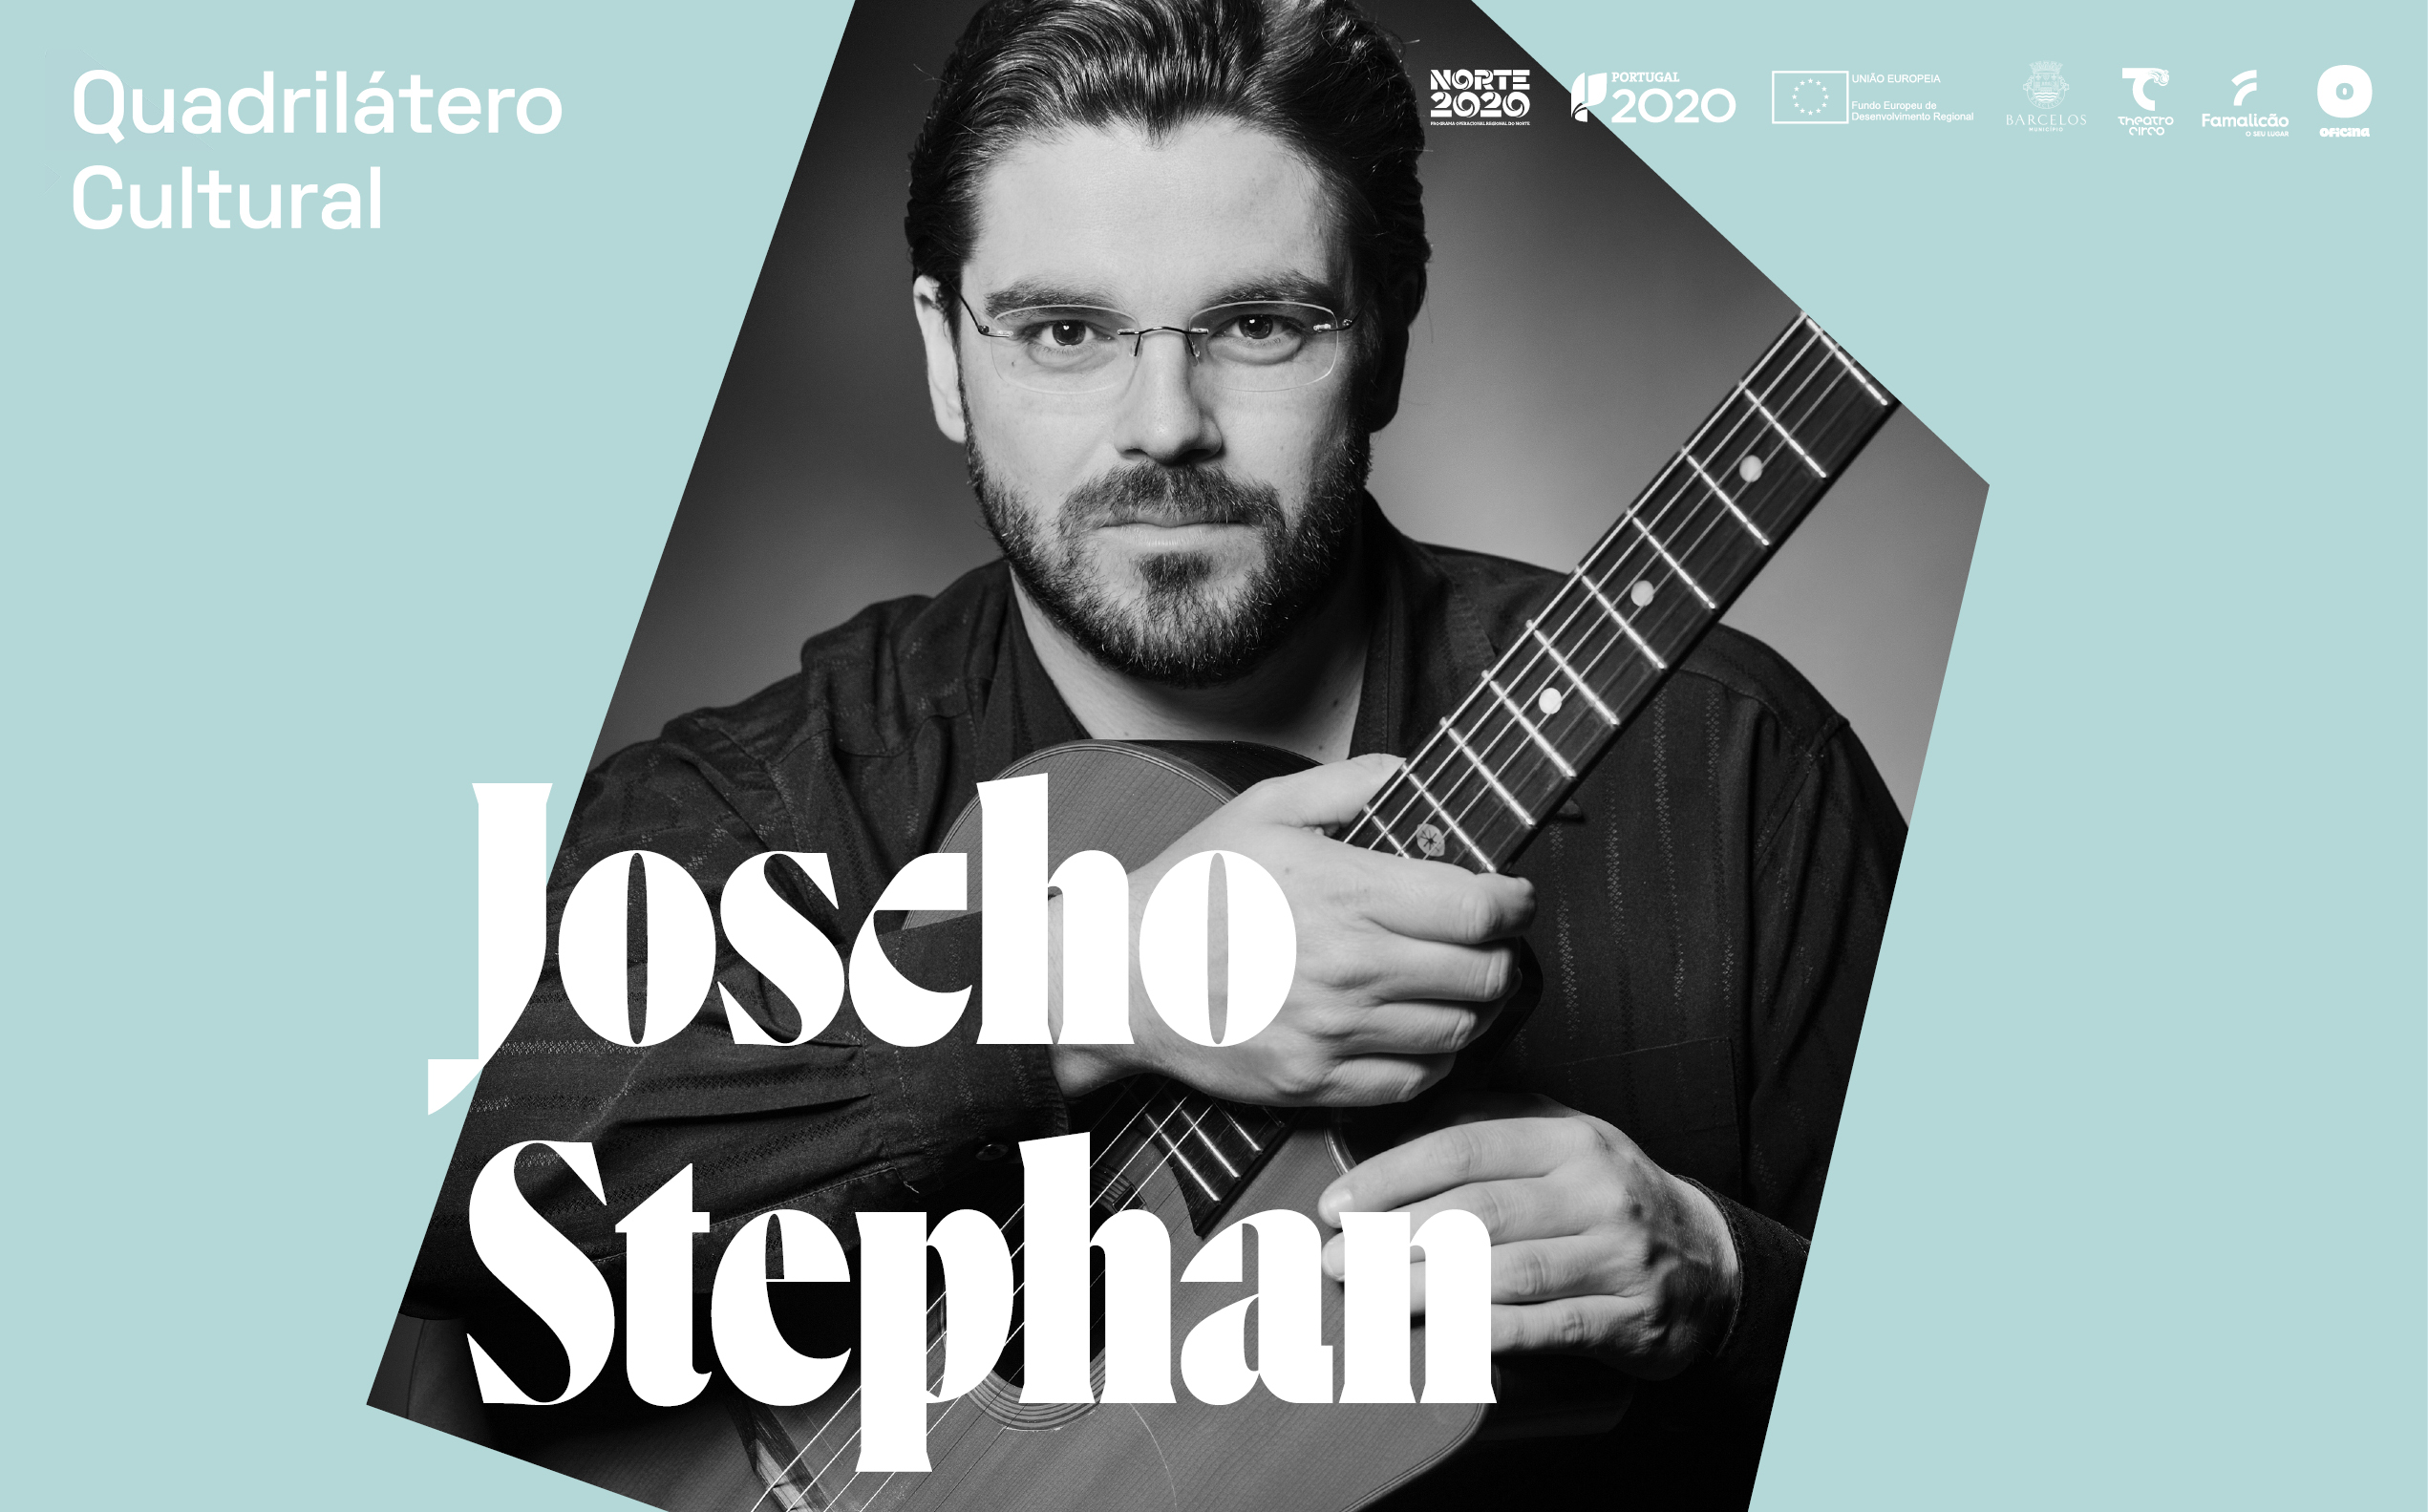 Espetáculo de Joscho Stephan estreia em Barcelos com masterclass com músicos locais